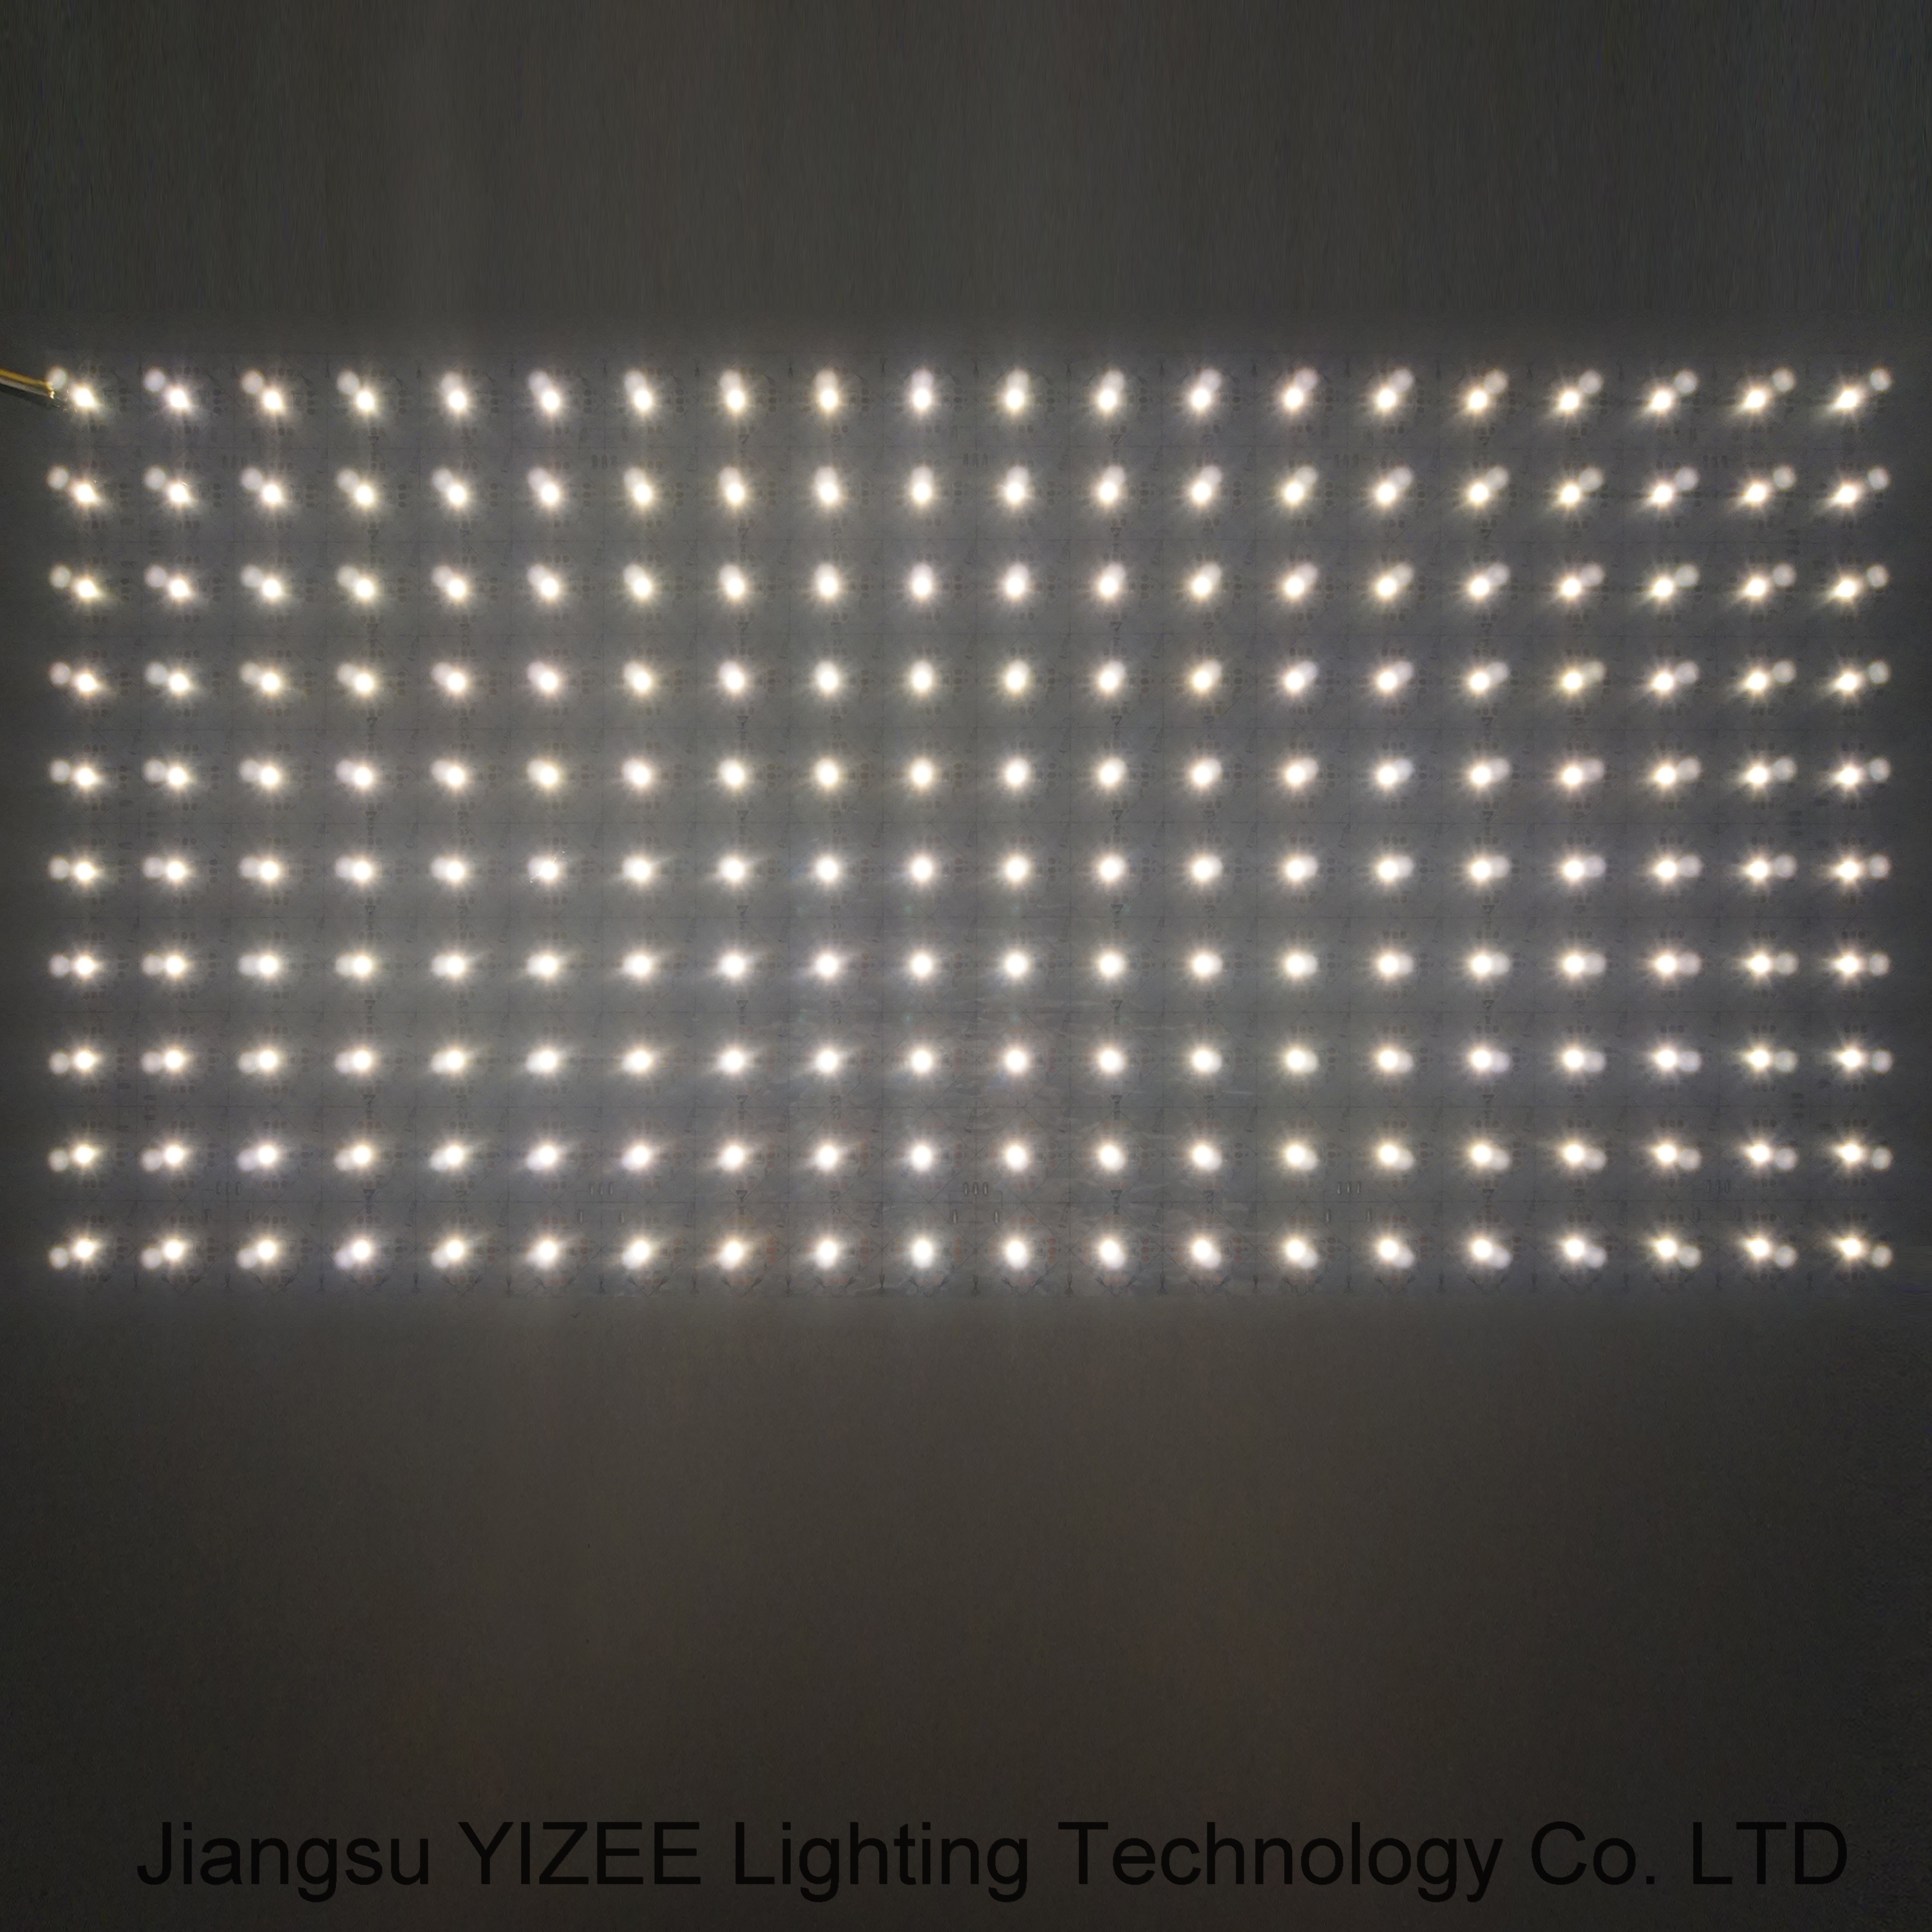 Flexible LED Light Sheet 2700K-6500K Color Temperature Adjustable LED Strip LED Backlight Lighting